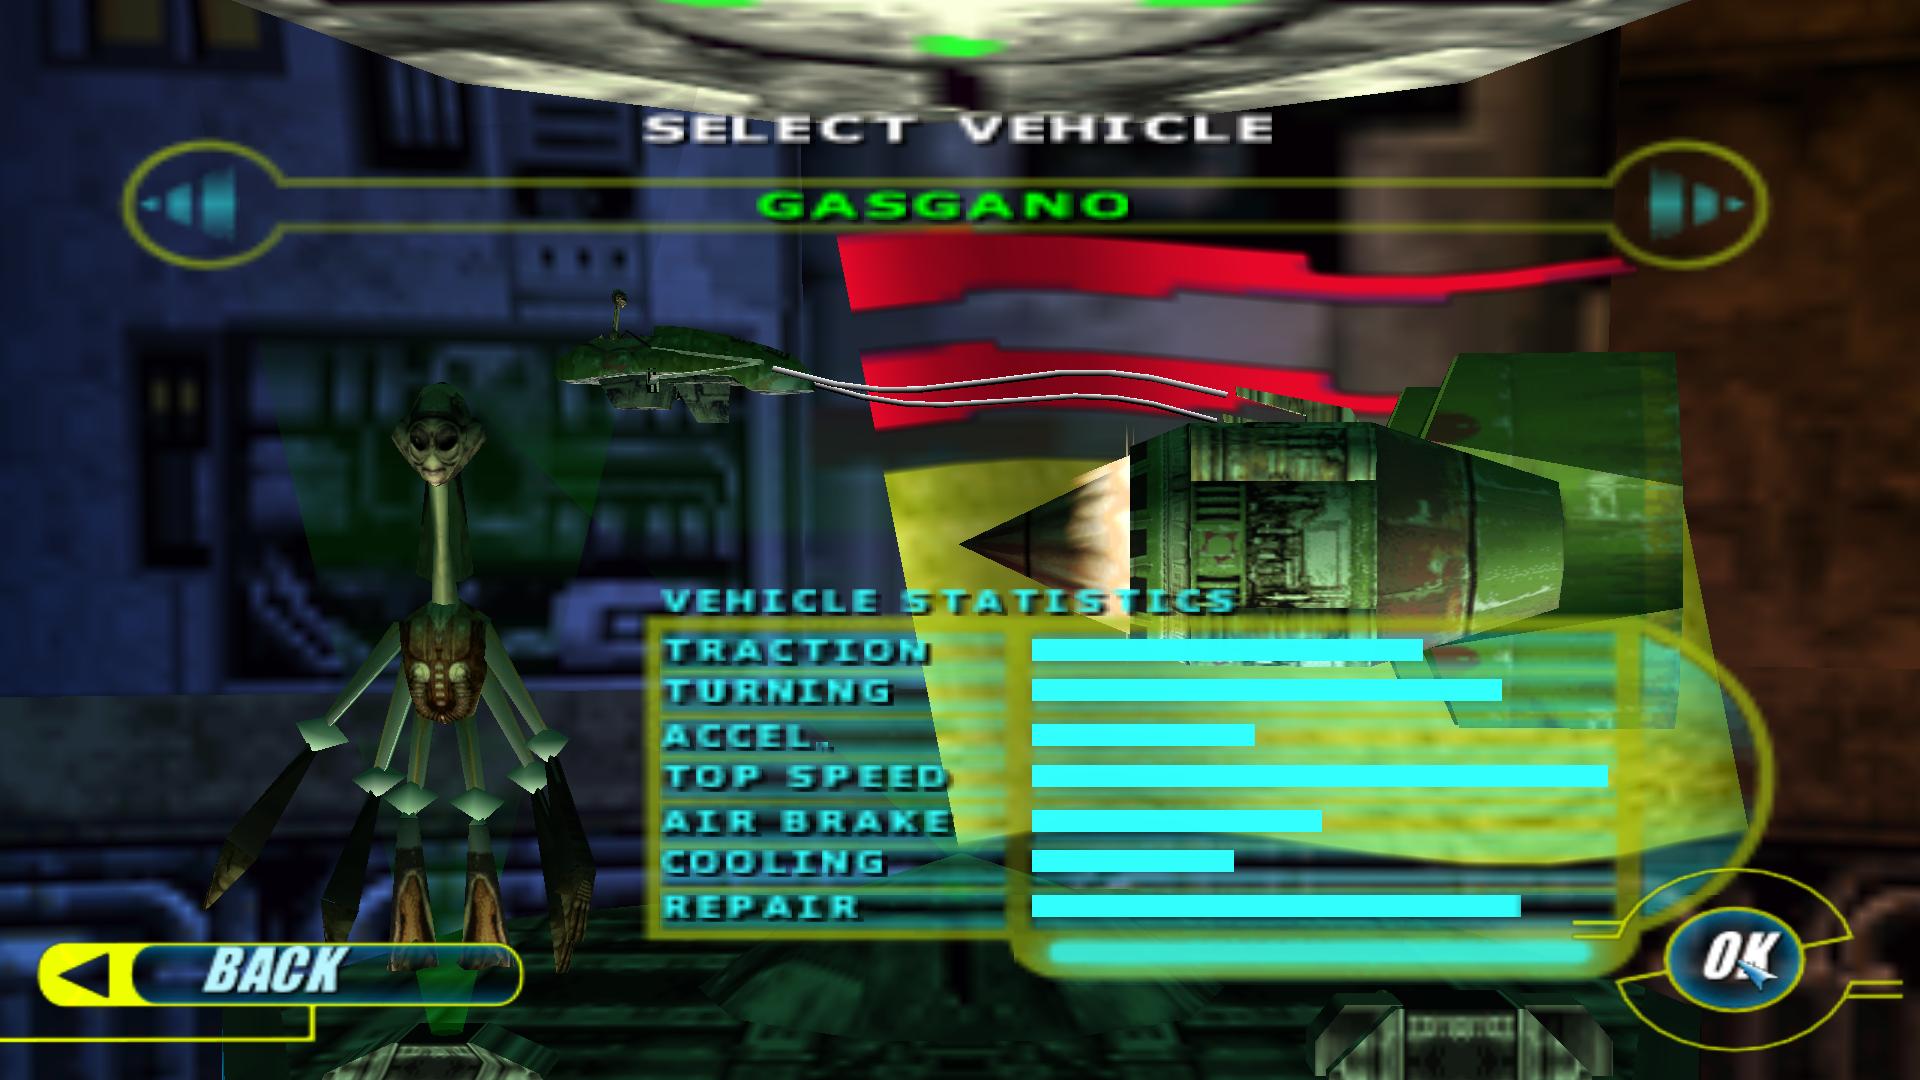 STAR WARS Episode I Racer screenshot